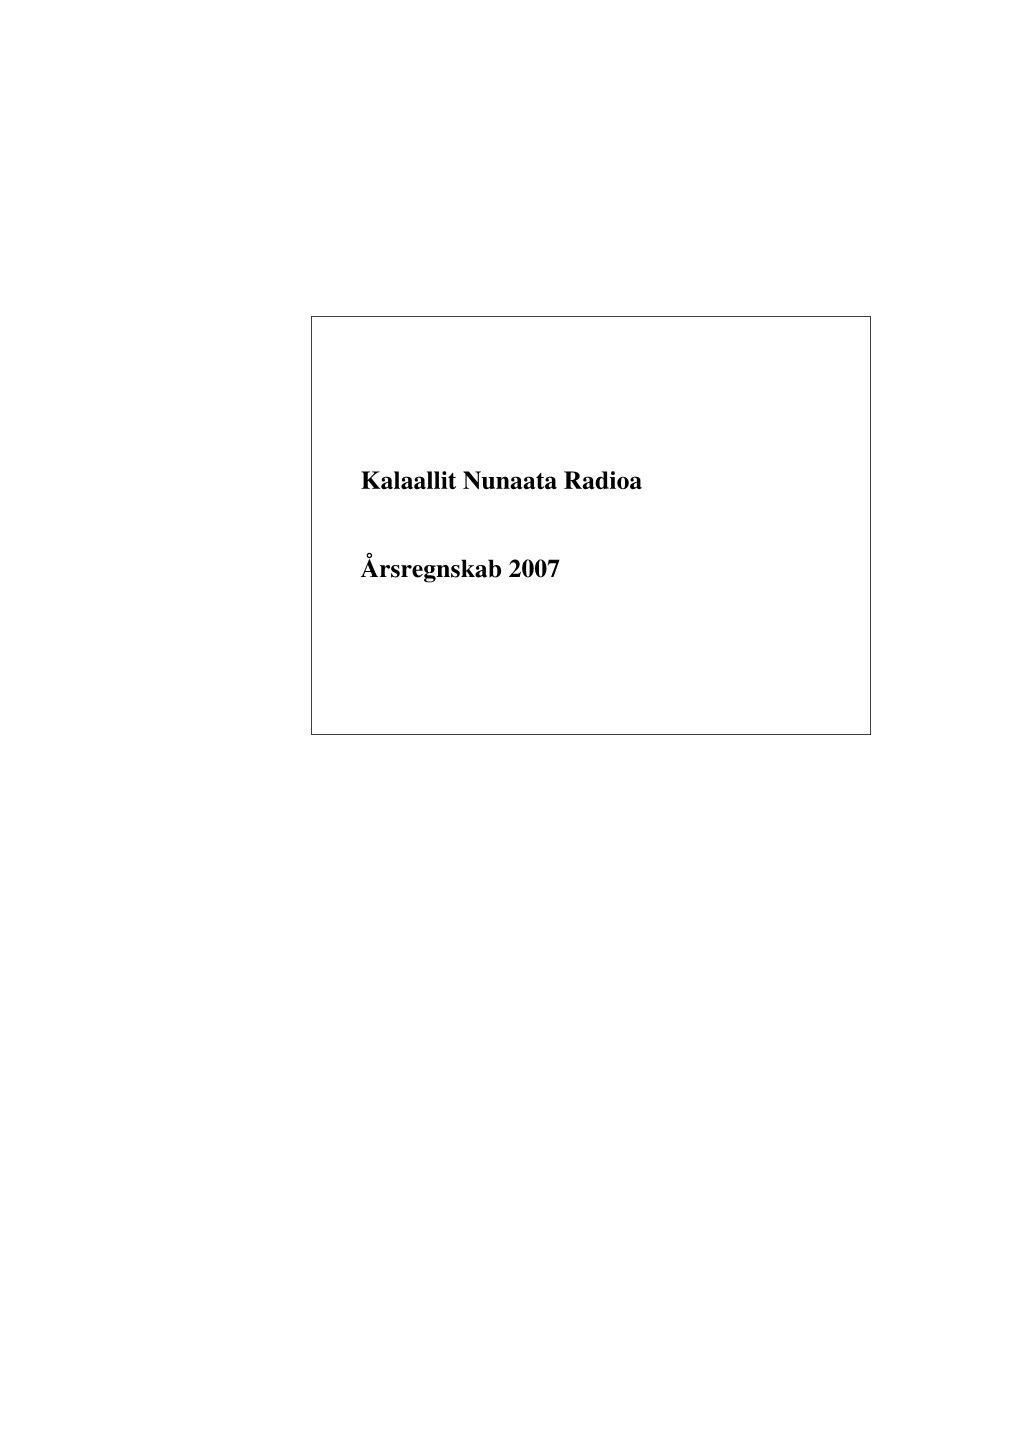 Kalaallit Nunaata Radioa Årsregnskab 2007